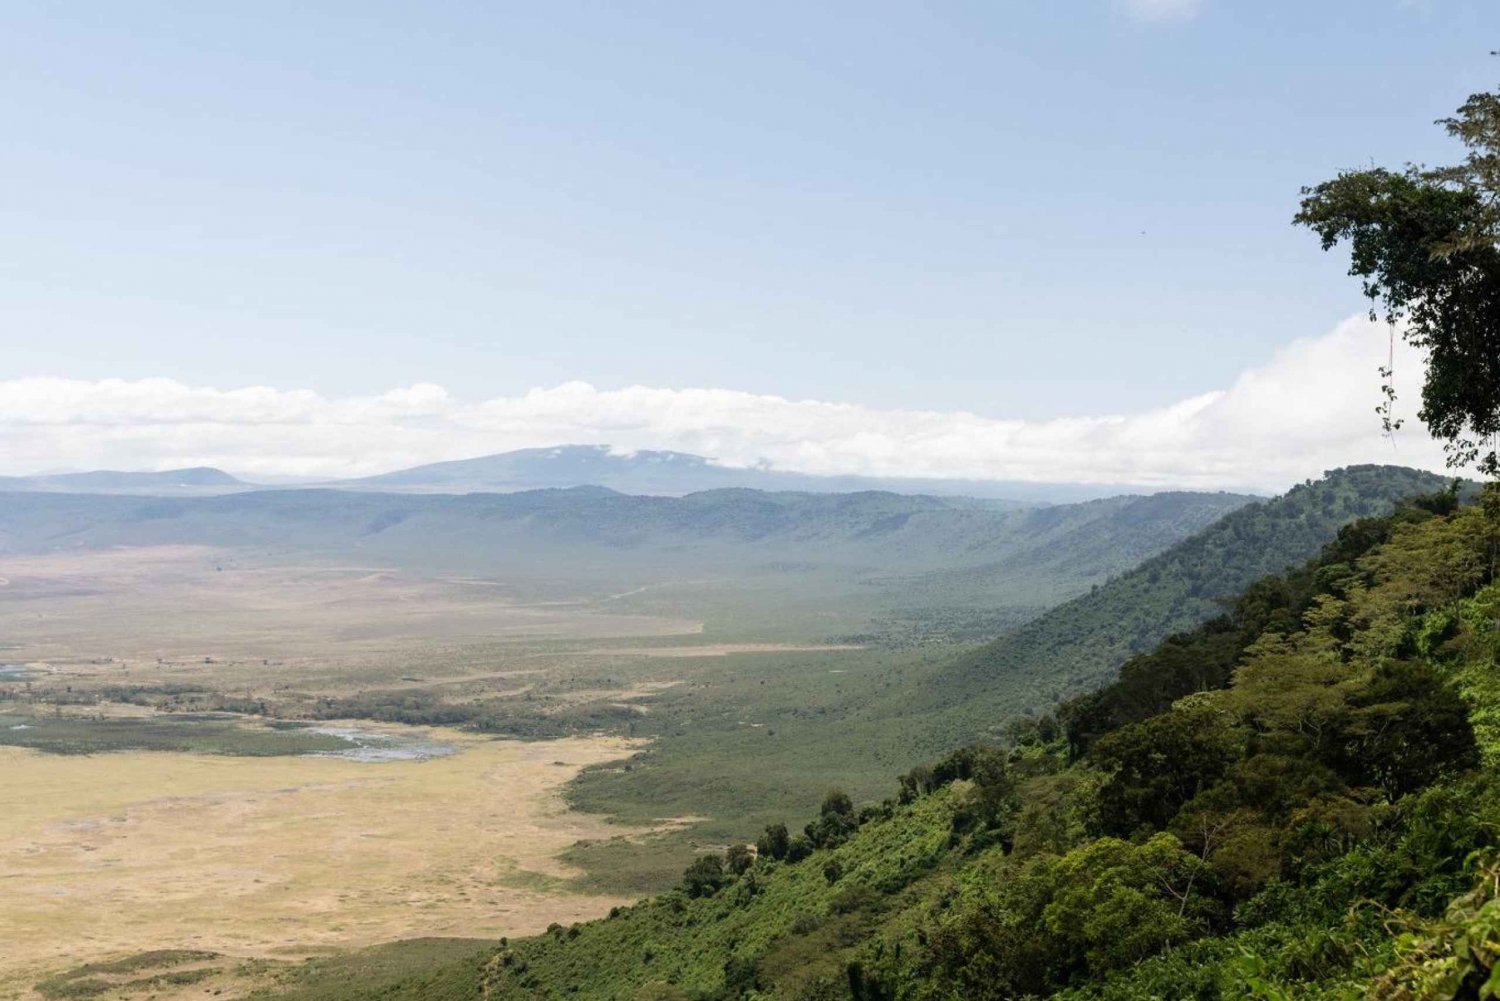 1 dags gemensamt safariäventyr i Ngorongorokratern.